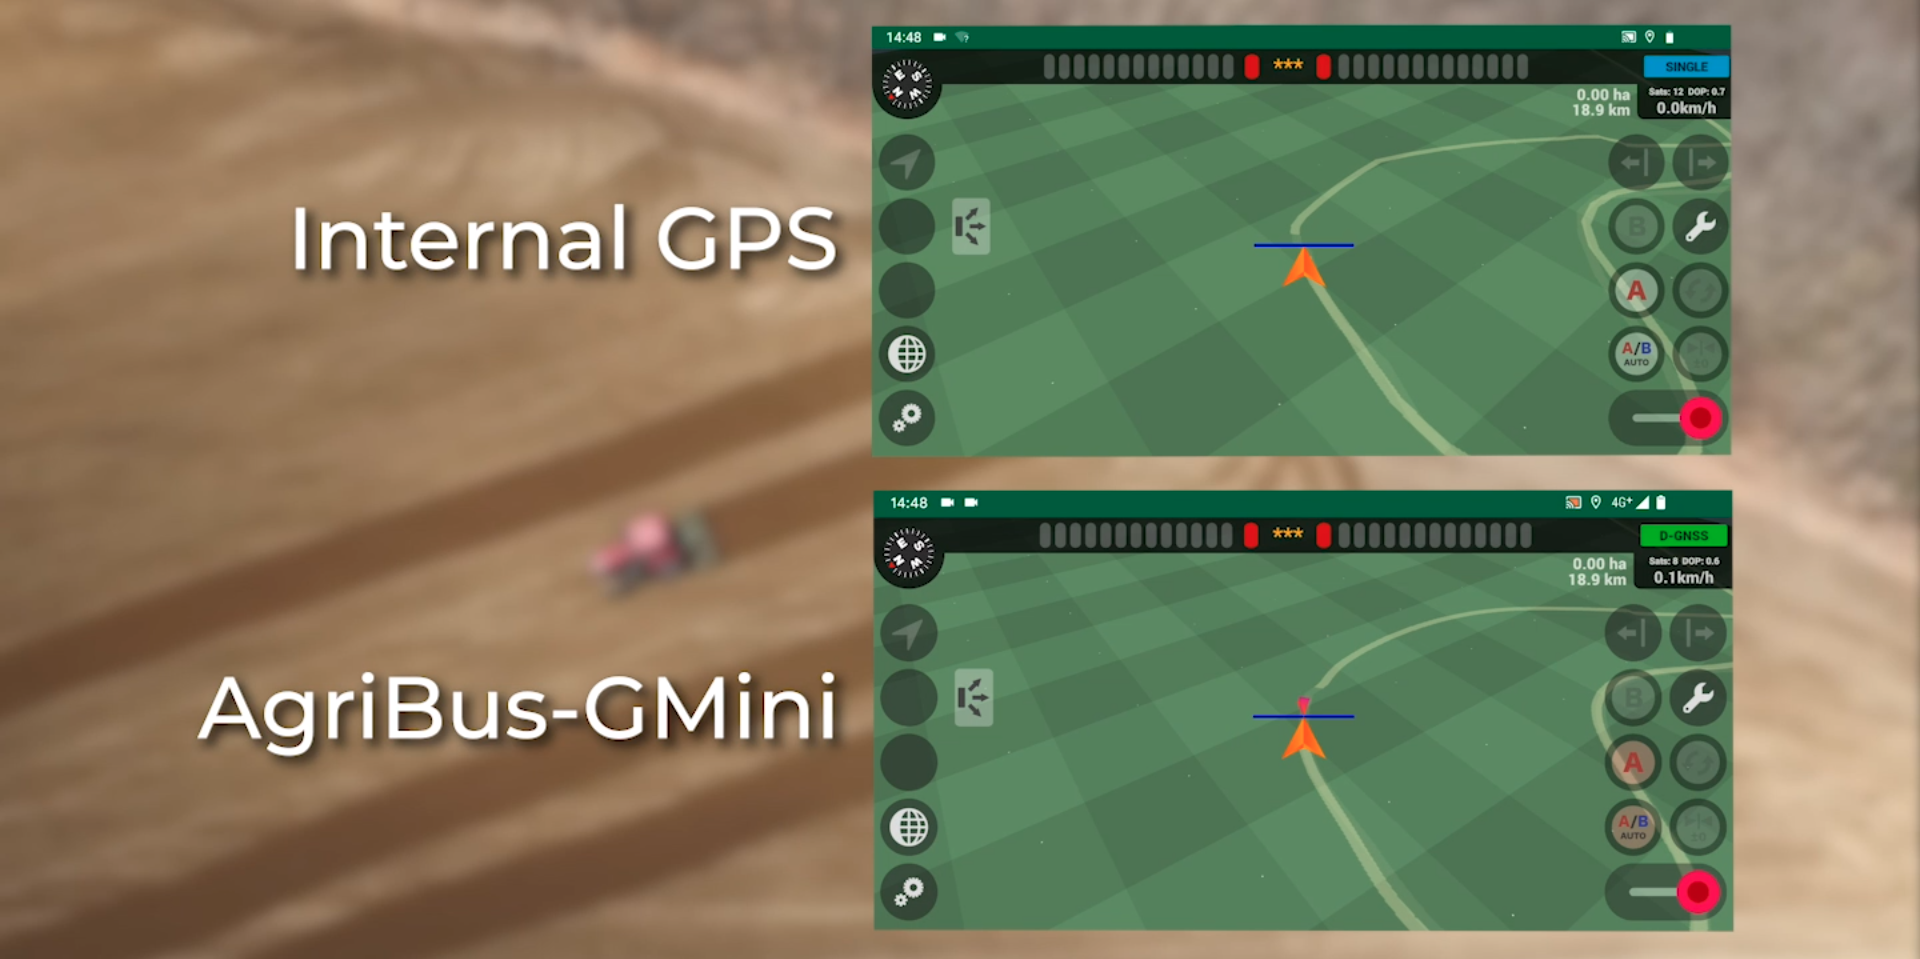 AgriBus-GMiniと、スマホ内蔵GPSとの違いはどれほどか